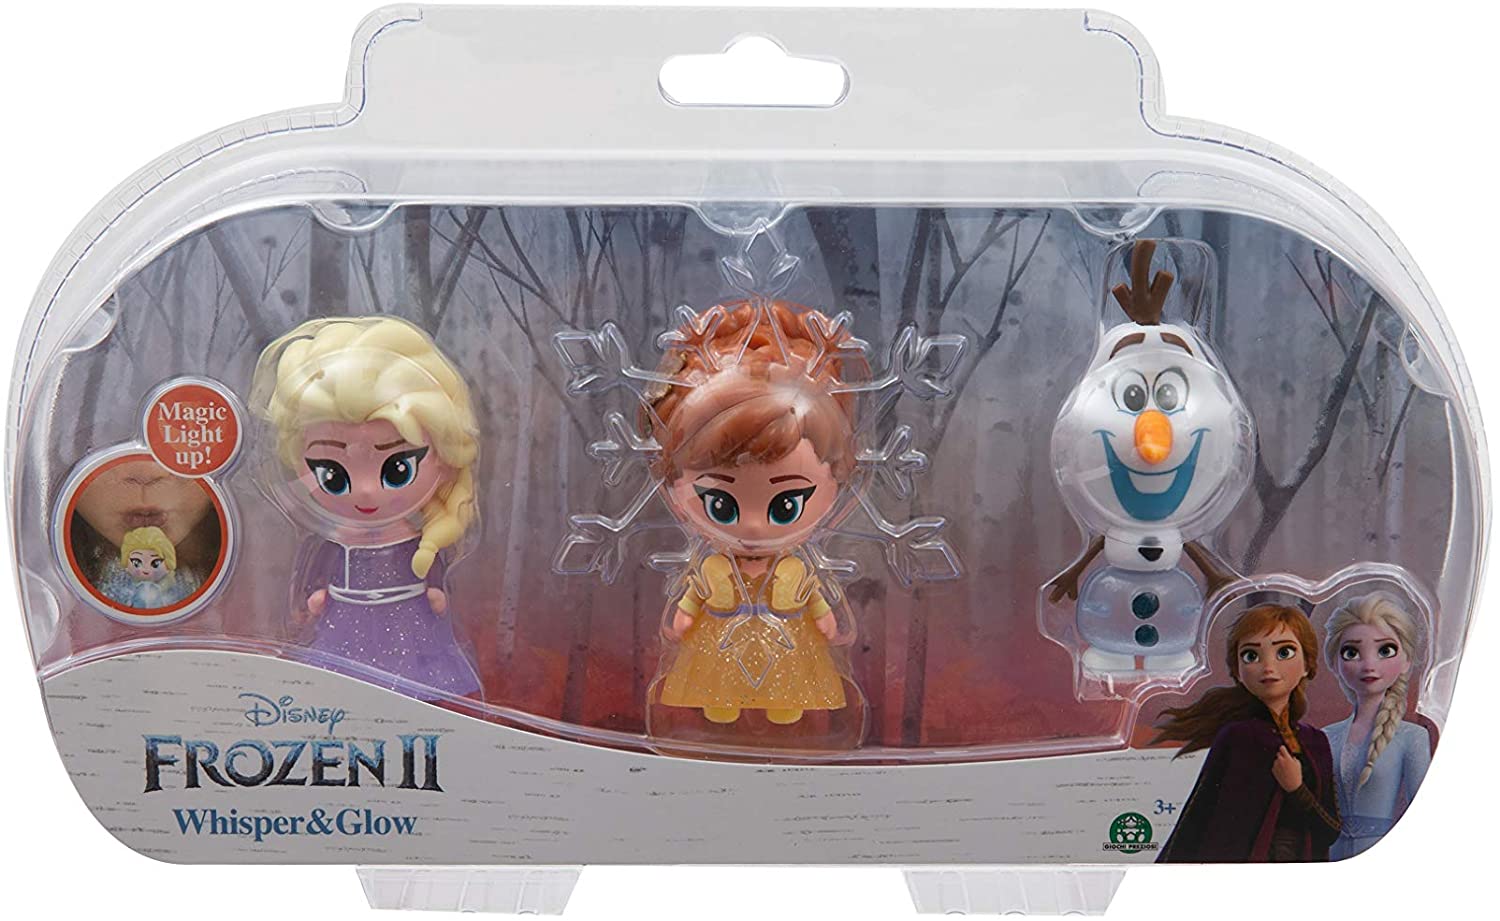 Frozen 2 Frn75000 Disney Frozen 2 3 Light Figures 7 Cm Whisper & Glow Tripl